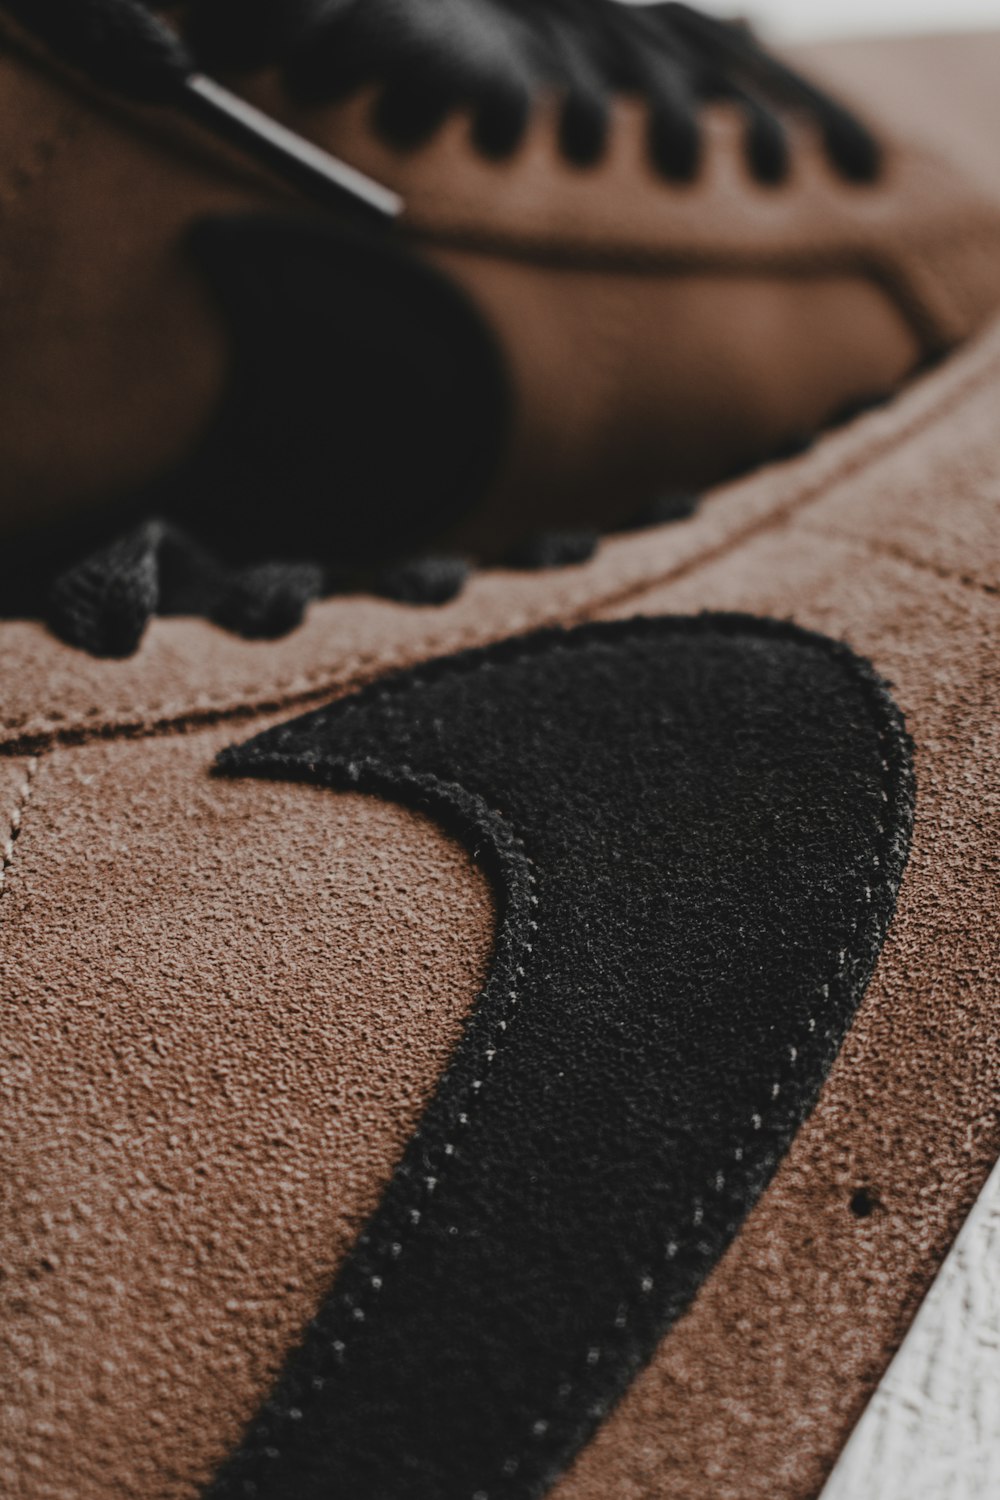 Foto Zapatillas nike negras y marrones – Imagen Nike gratis en Unsplash